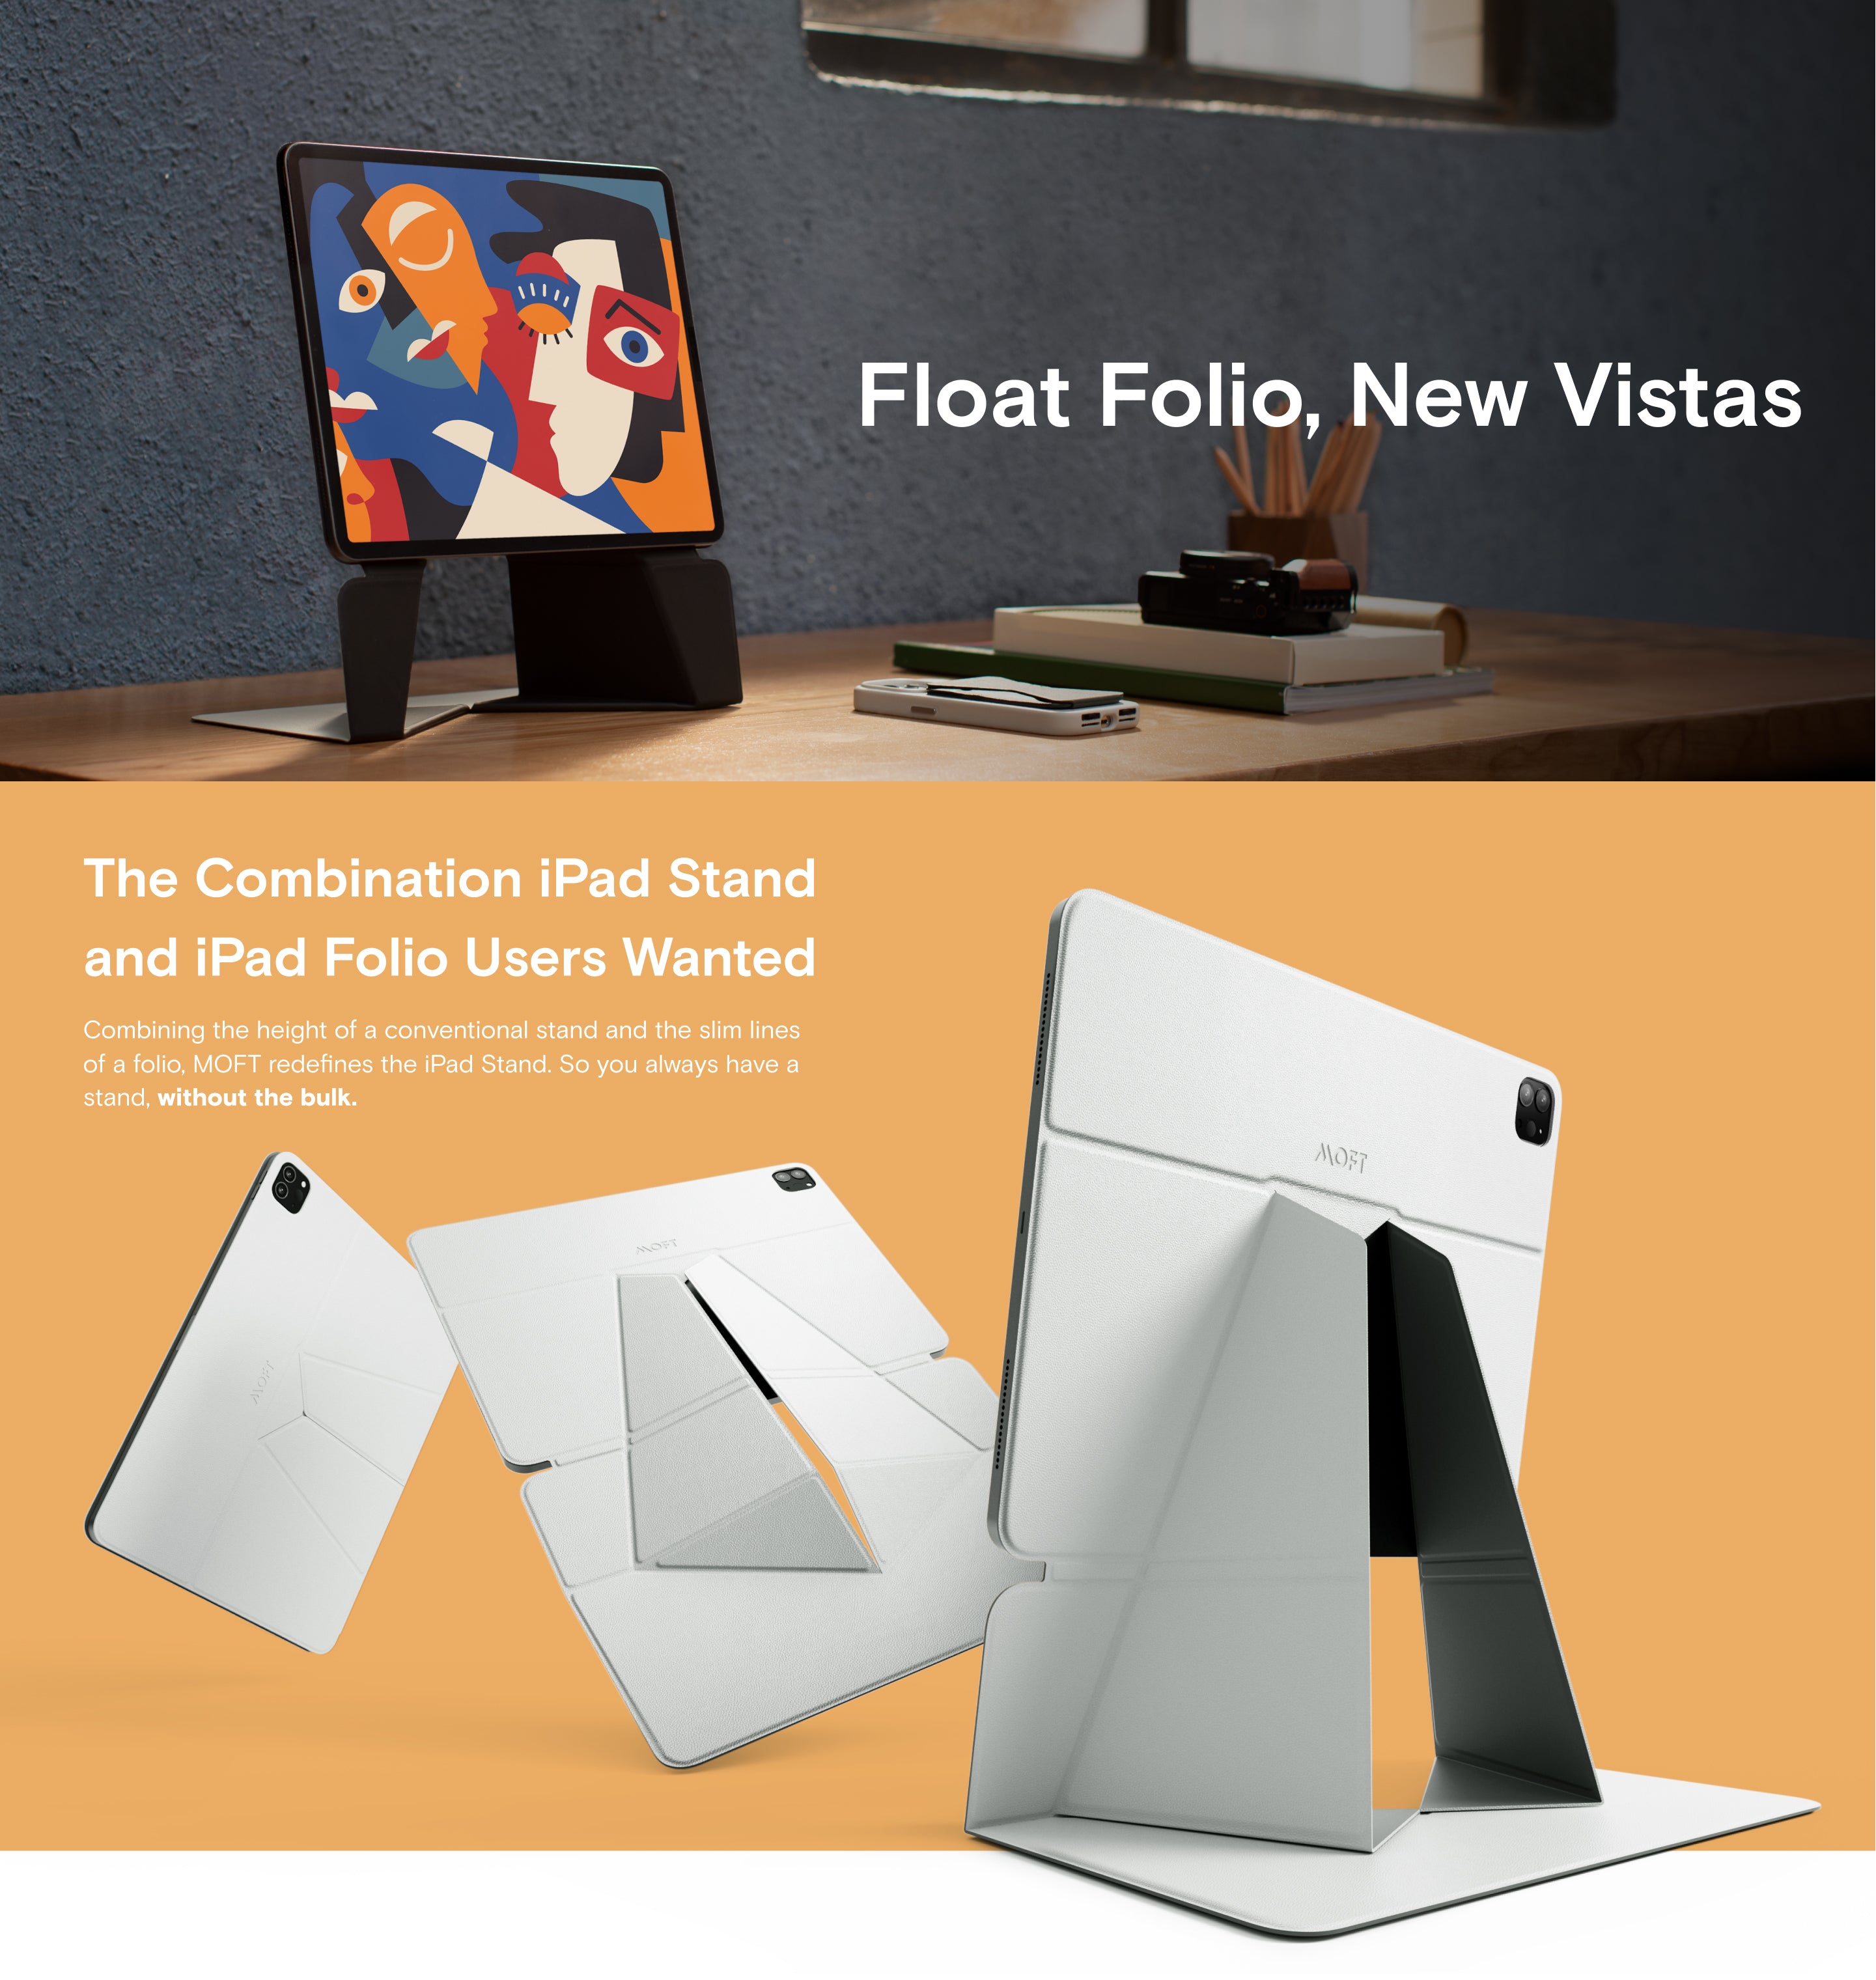 Stylish Snap Float Folio | MOFT – MOFT